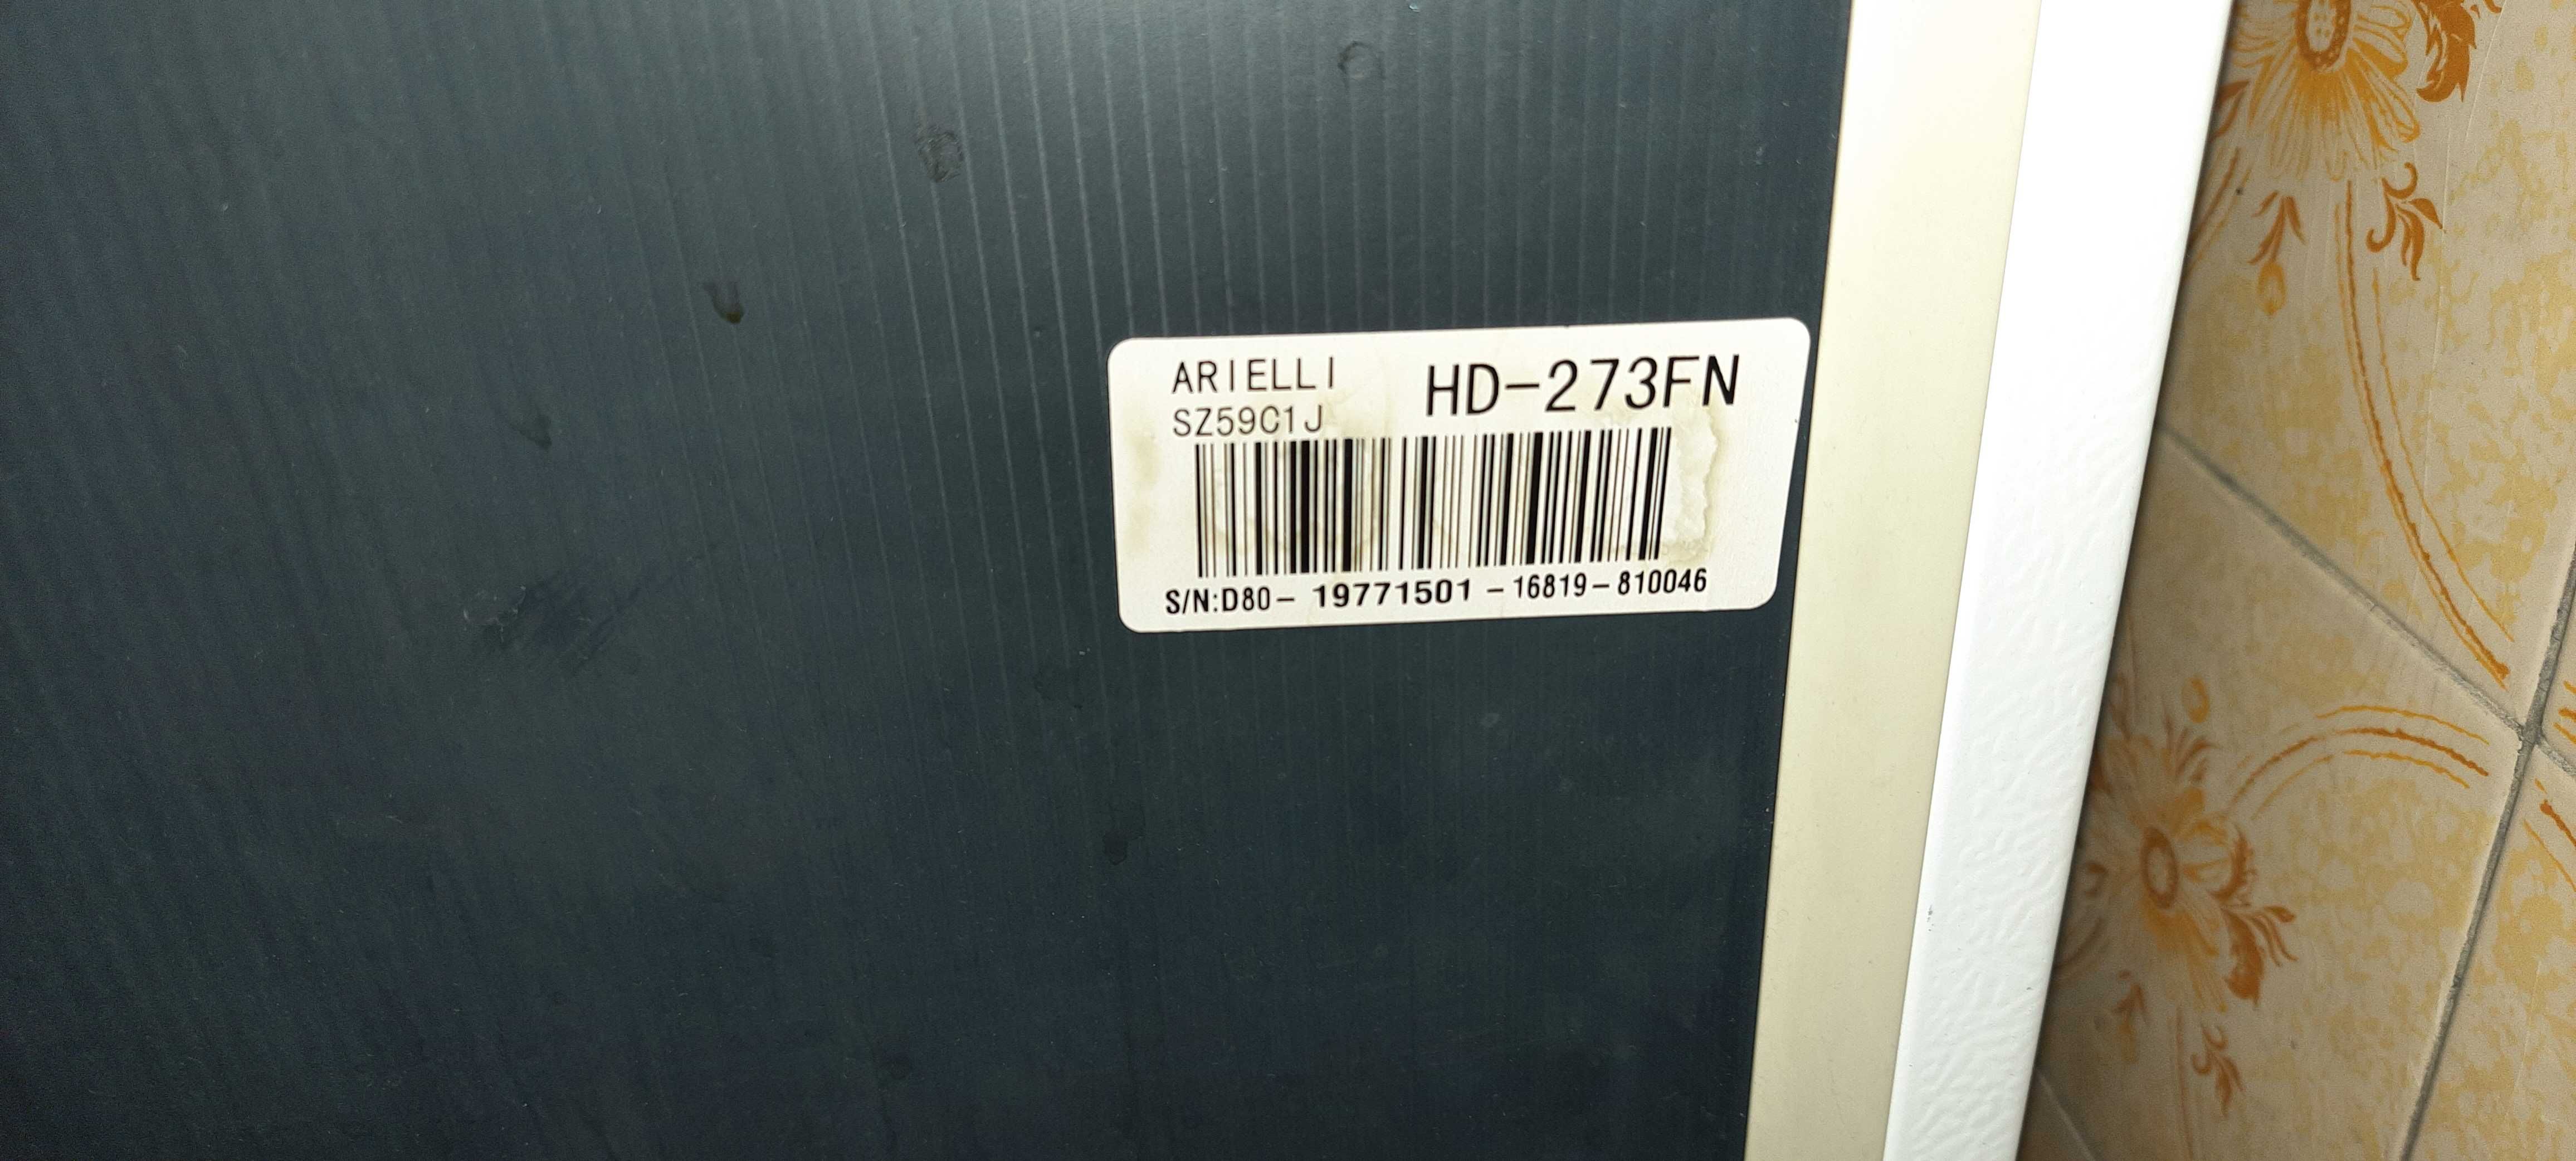 Хладилник с горна фризерна част, Arielli модел HD-273 FN, 207 л, A+